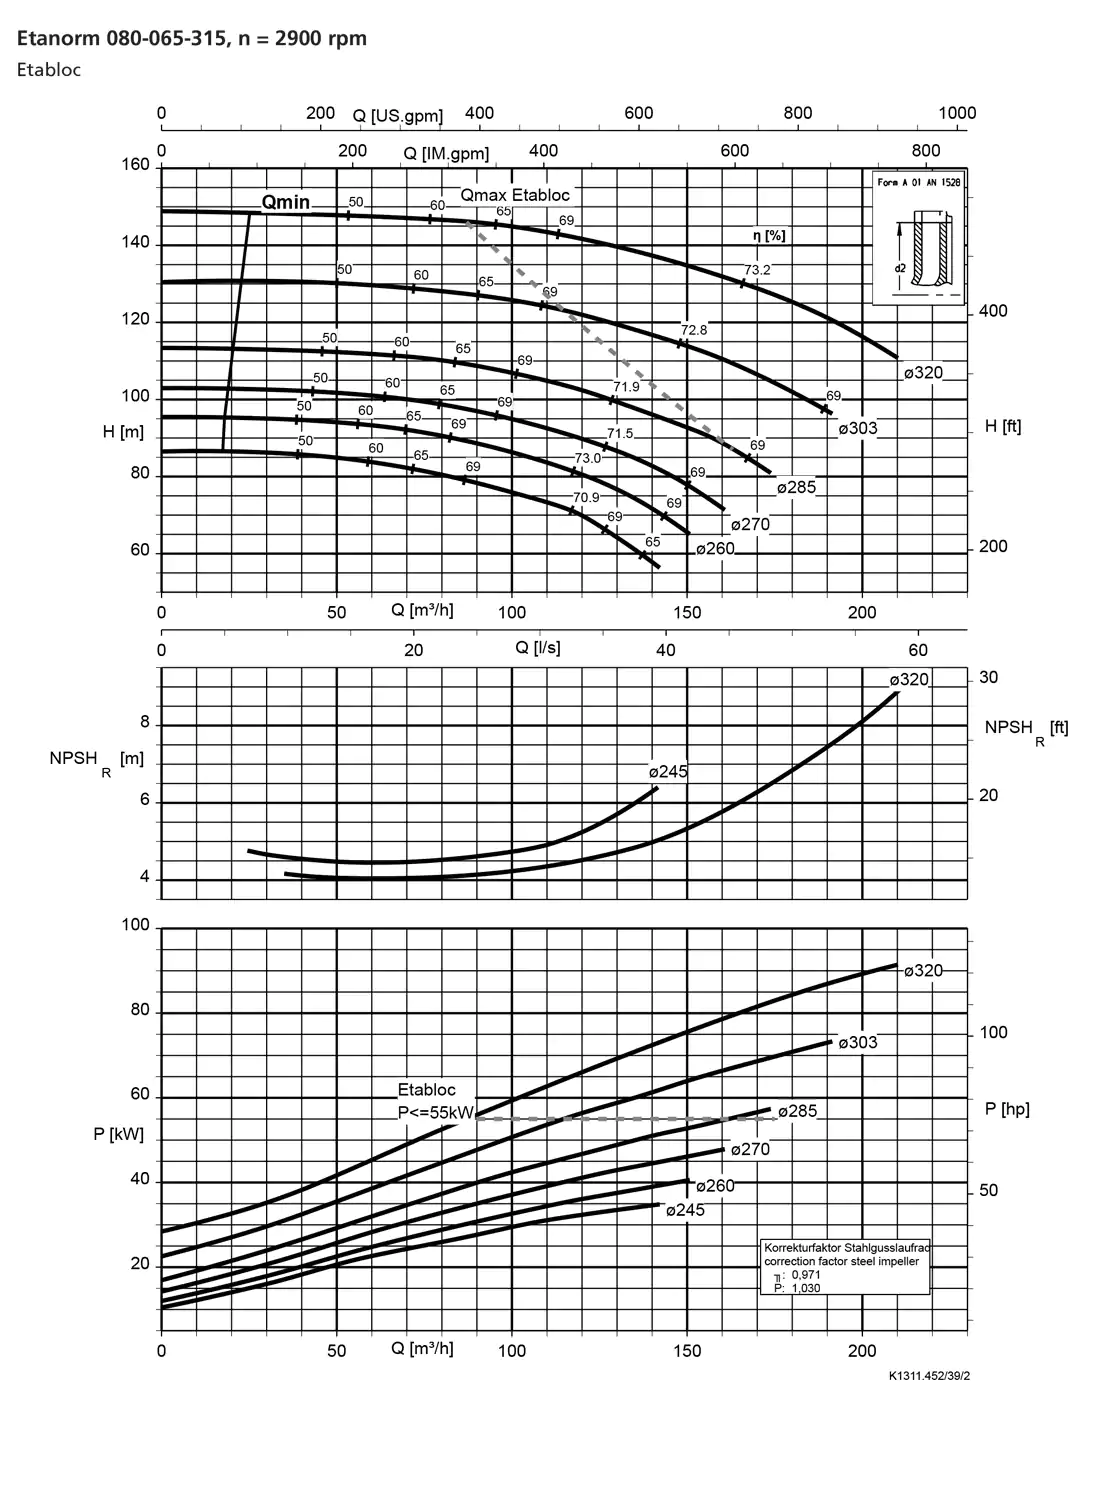 نمودار-کارکرد-پمپ-etanorm-syt-80-065-315-2900